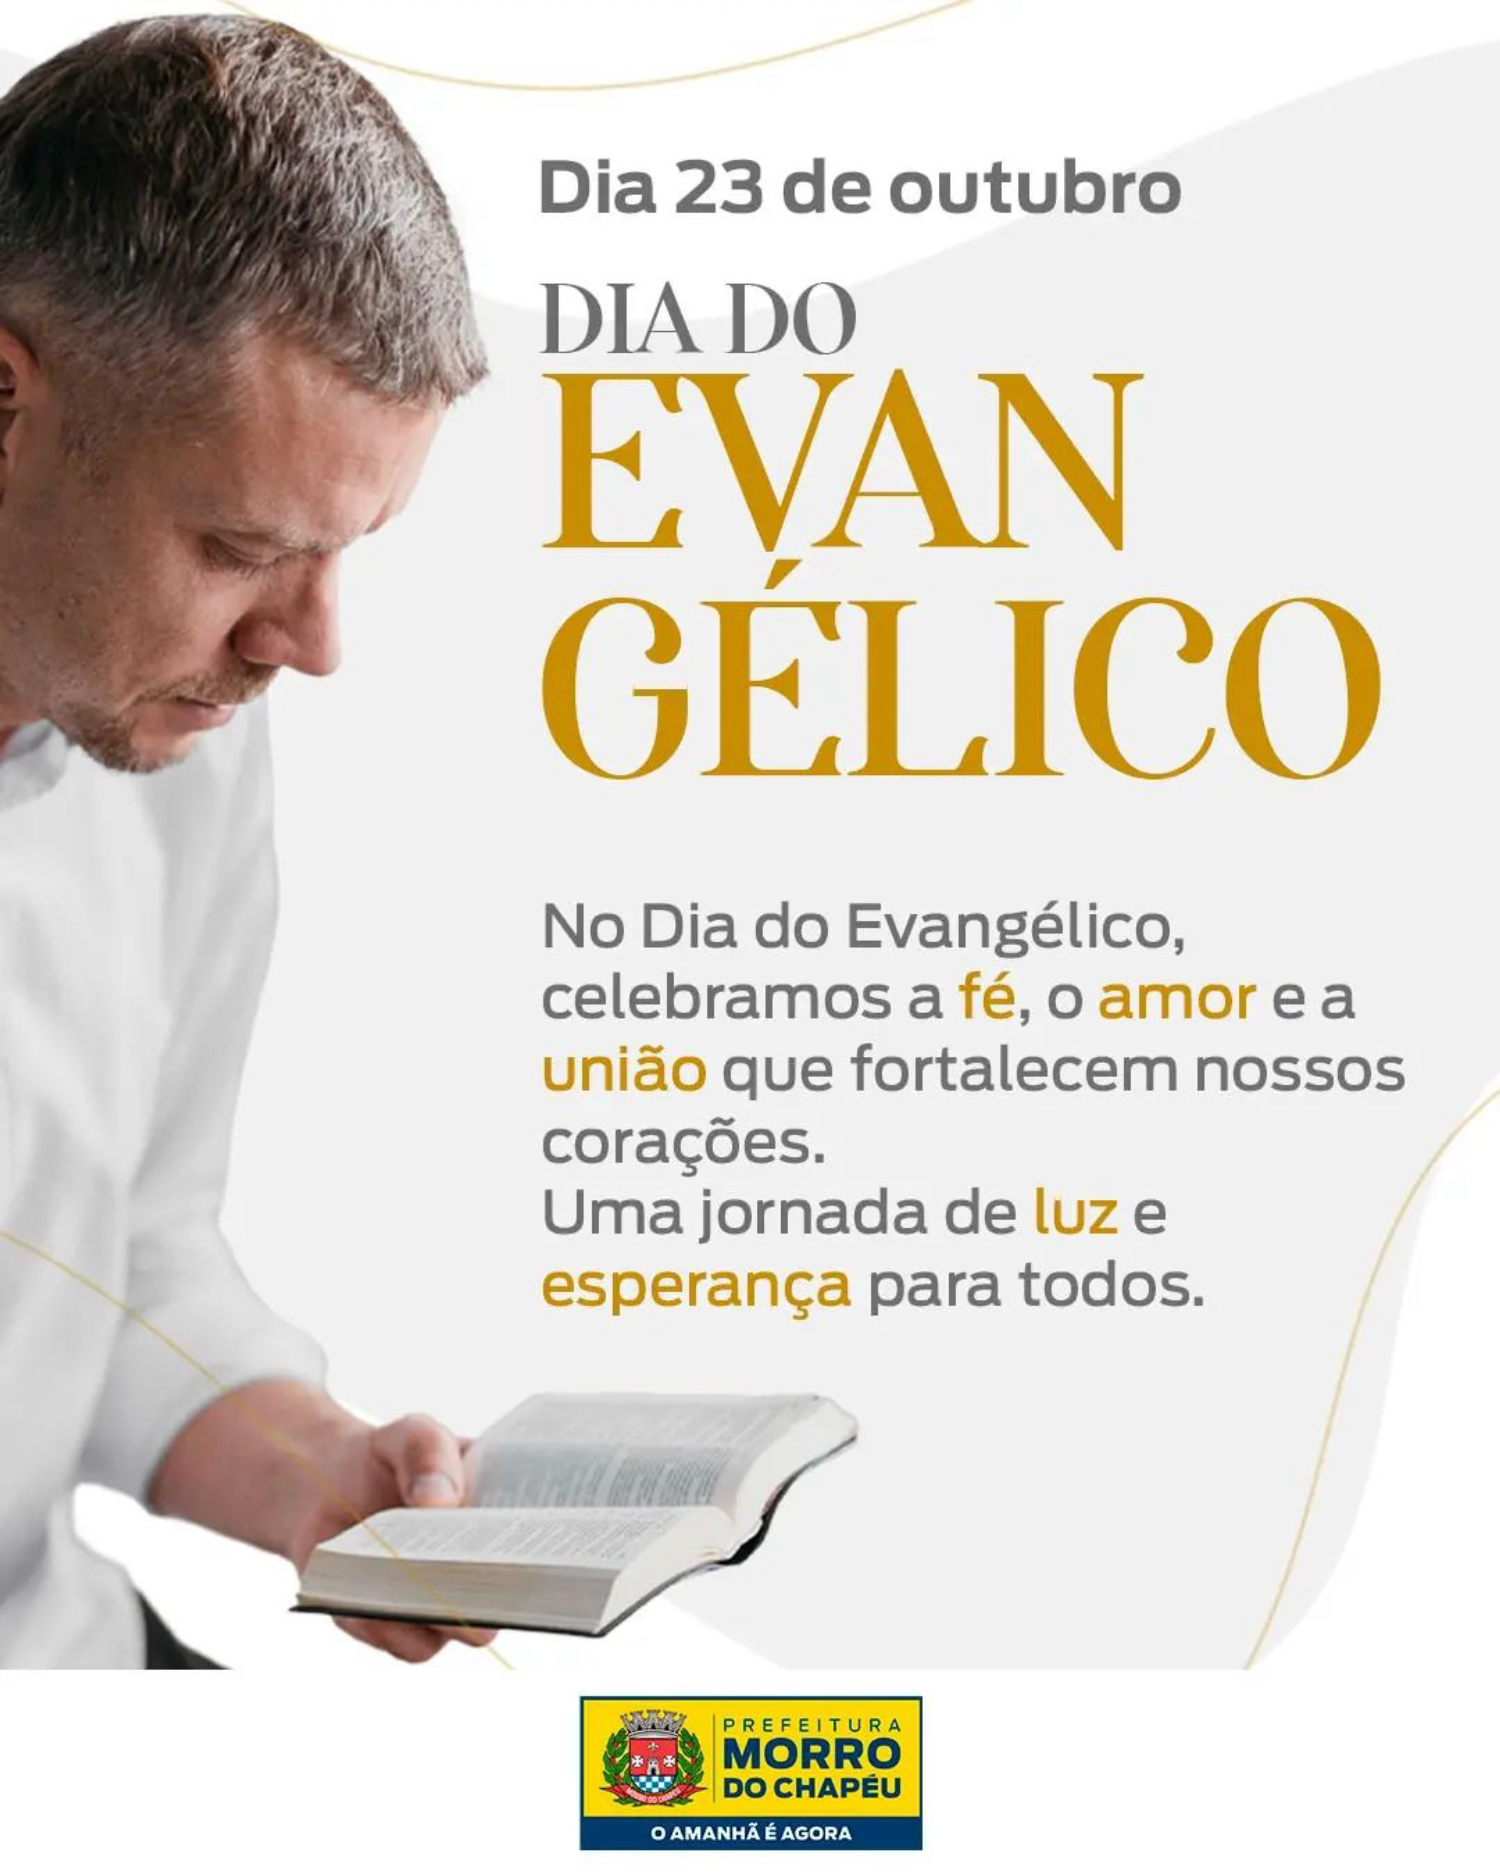 Morro do Chapéu comemora Dia do Evangélico – Lider Noticias